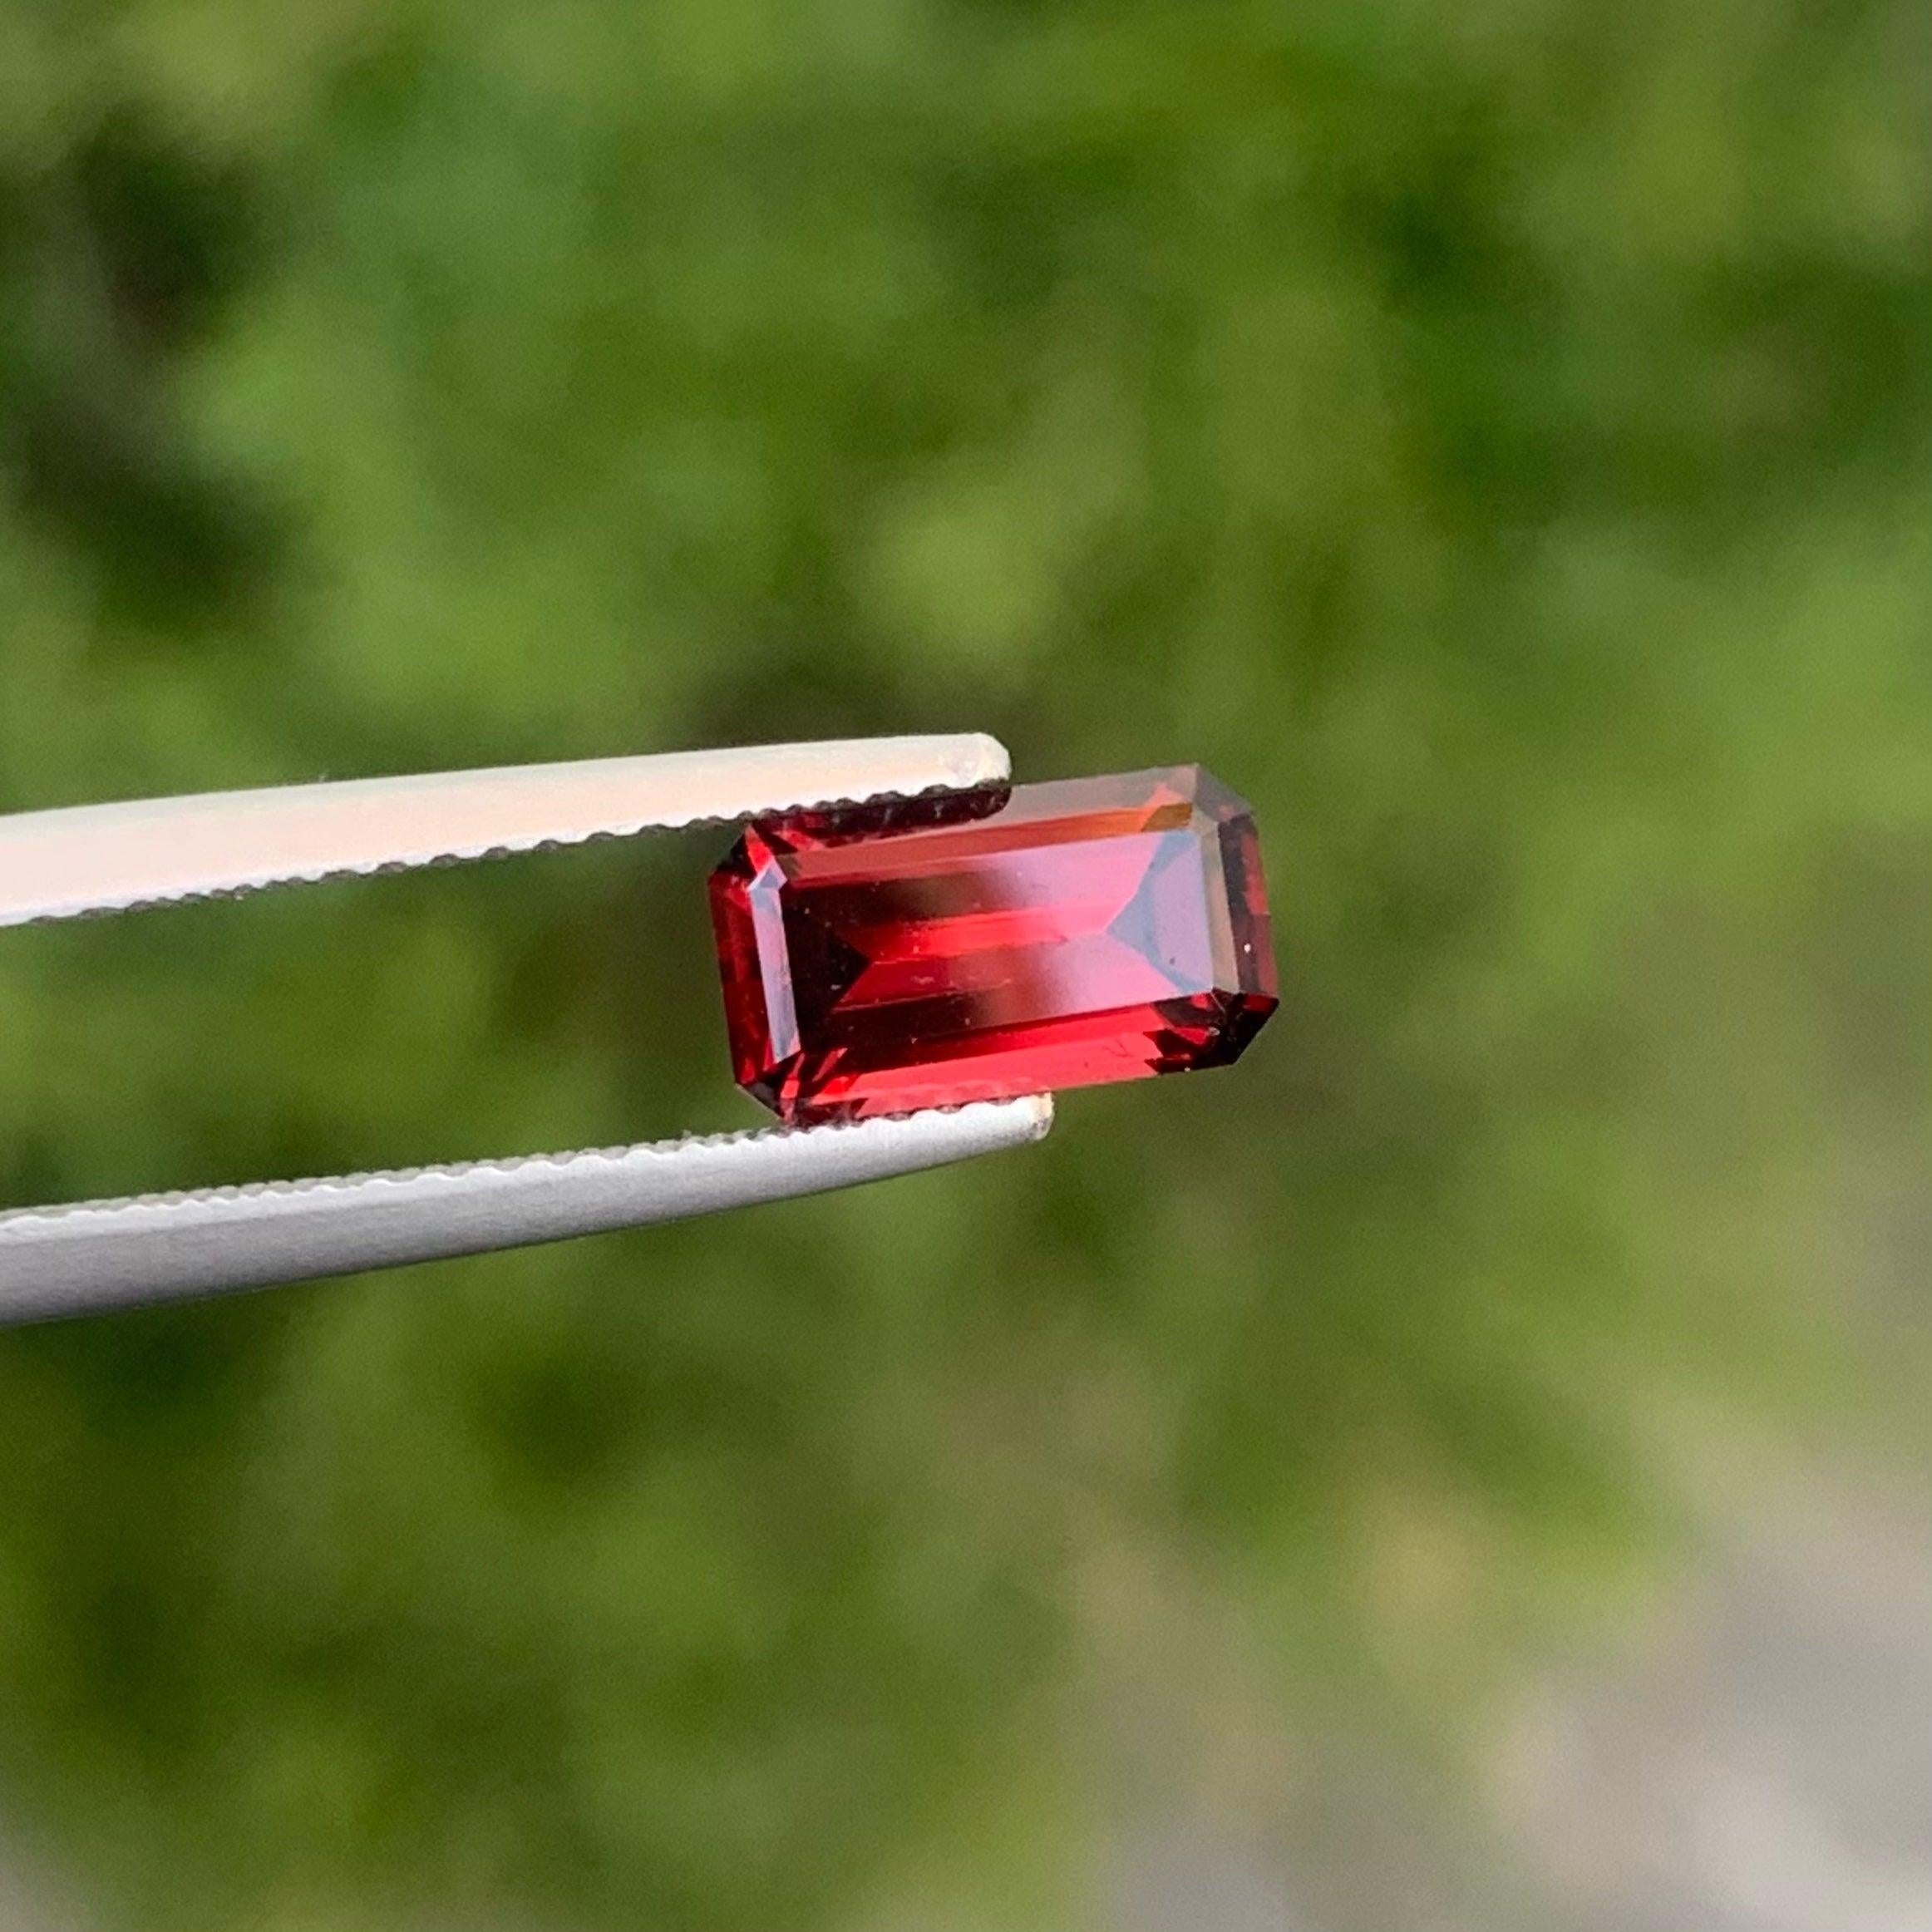 Grenat rouge spectaculaire pour bijoux, disponible à la vente au prix de gros Nature de haute qualité 1,95 carats non chauffé  Grenat de Madagascar.

 

Informations sur le produit :
NOM DE LA PIERRE PRÉCIEUSE : Grenat rouge spectaculaire pour